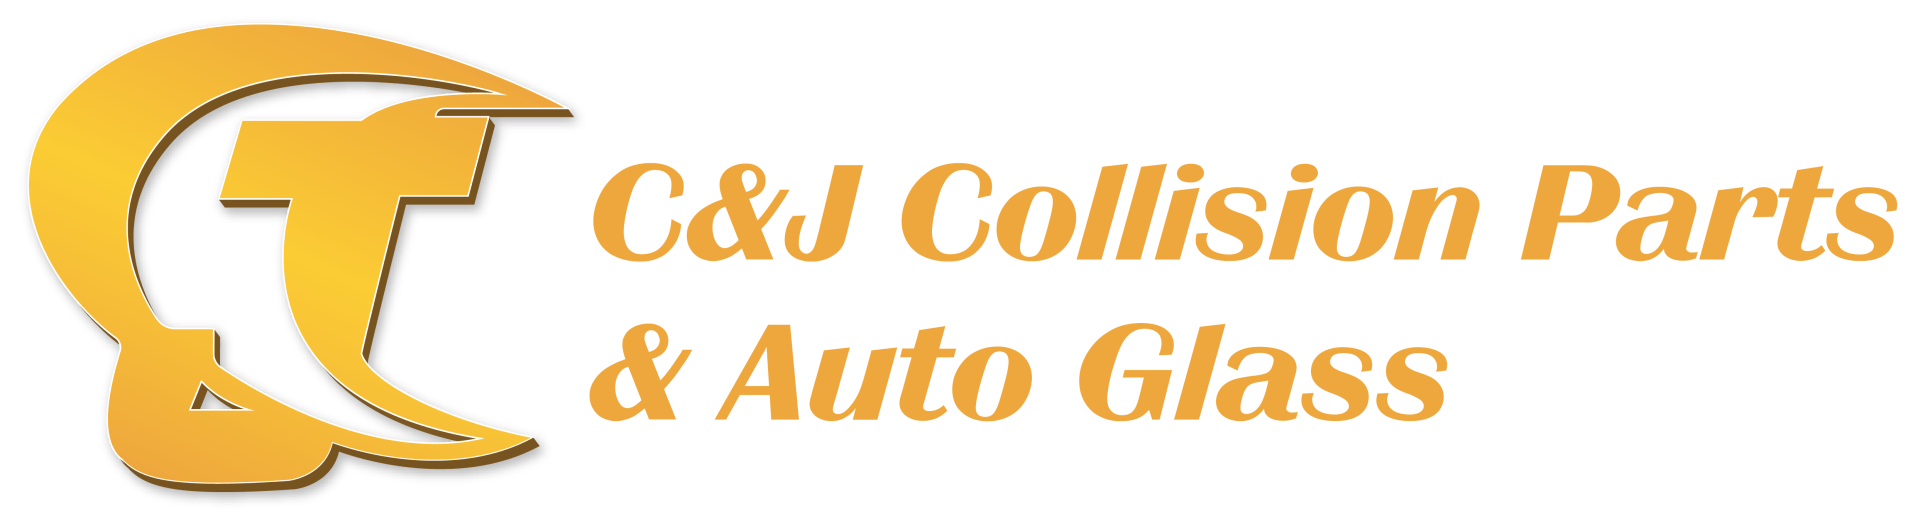 C & J Auto Collision Parts & Glass